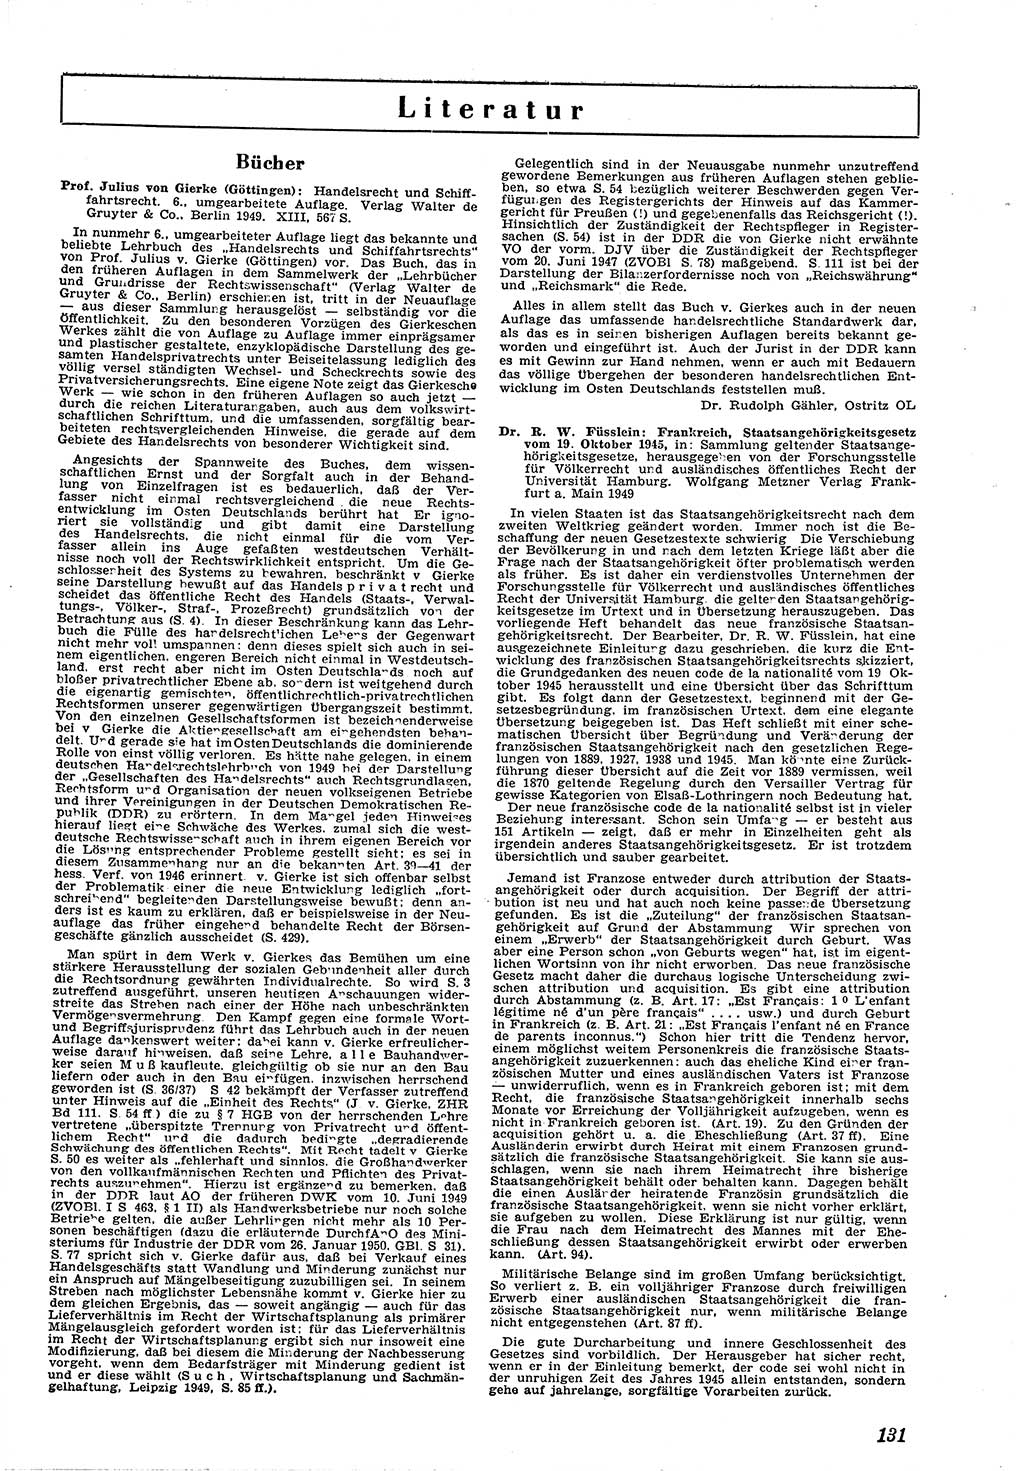 Neue Justiz (NJ), Zeitschrift für Recht und Rechtswissenschaft [Deutsche Demokratische Republik (DDR)], 4. Jahrgang 1950, Seite 131 (NJ DDR 1950, S. 131)